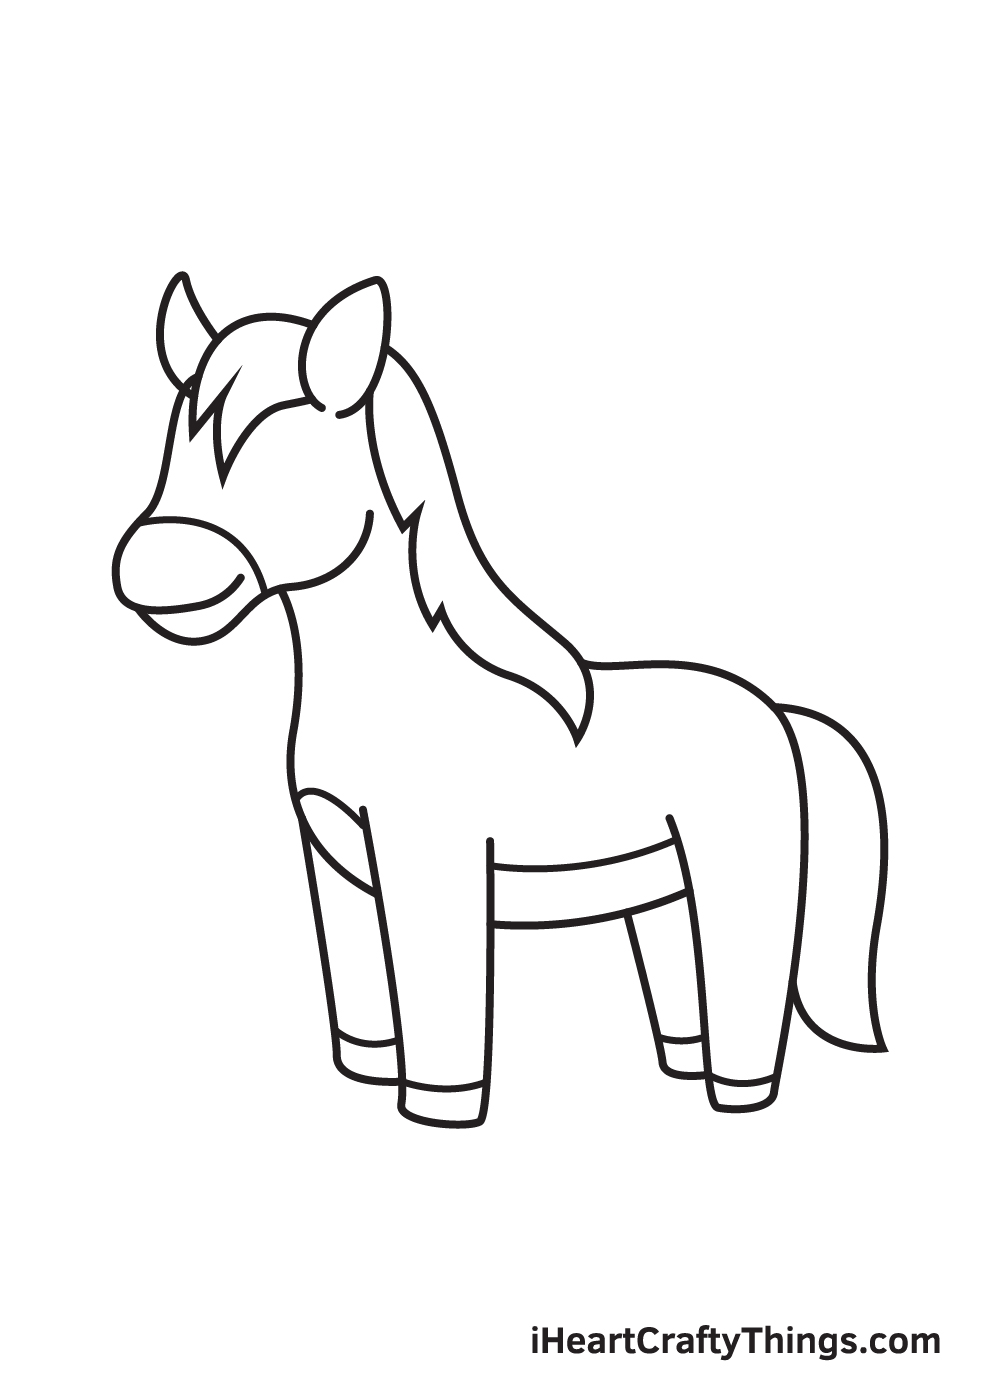 Hướng dẫn cách vẽ con ngựa đơn giản với 9 bước cơ bản